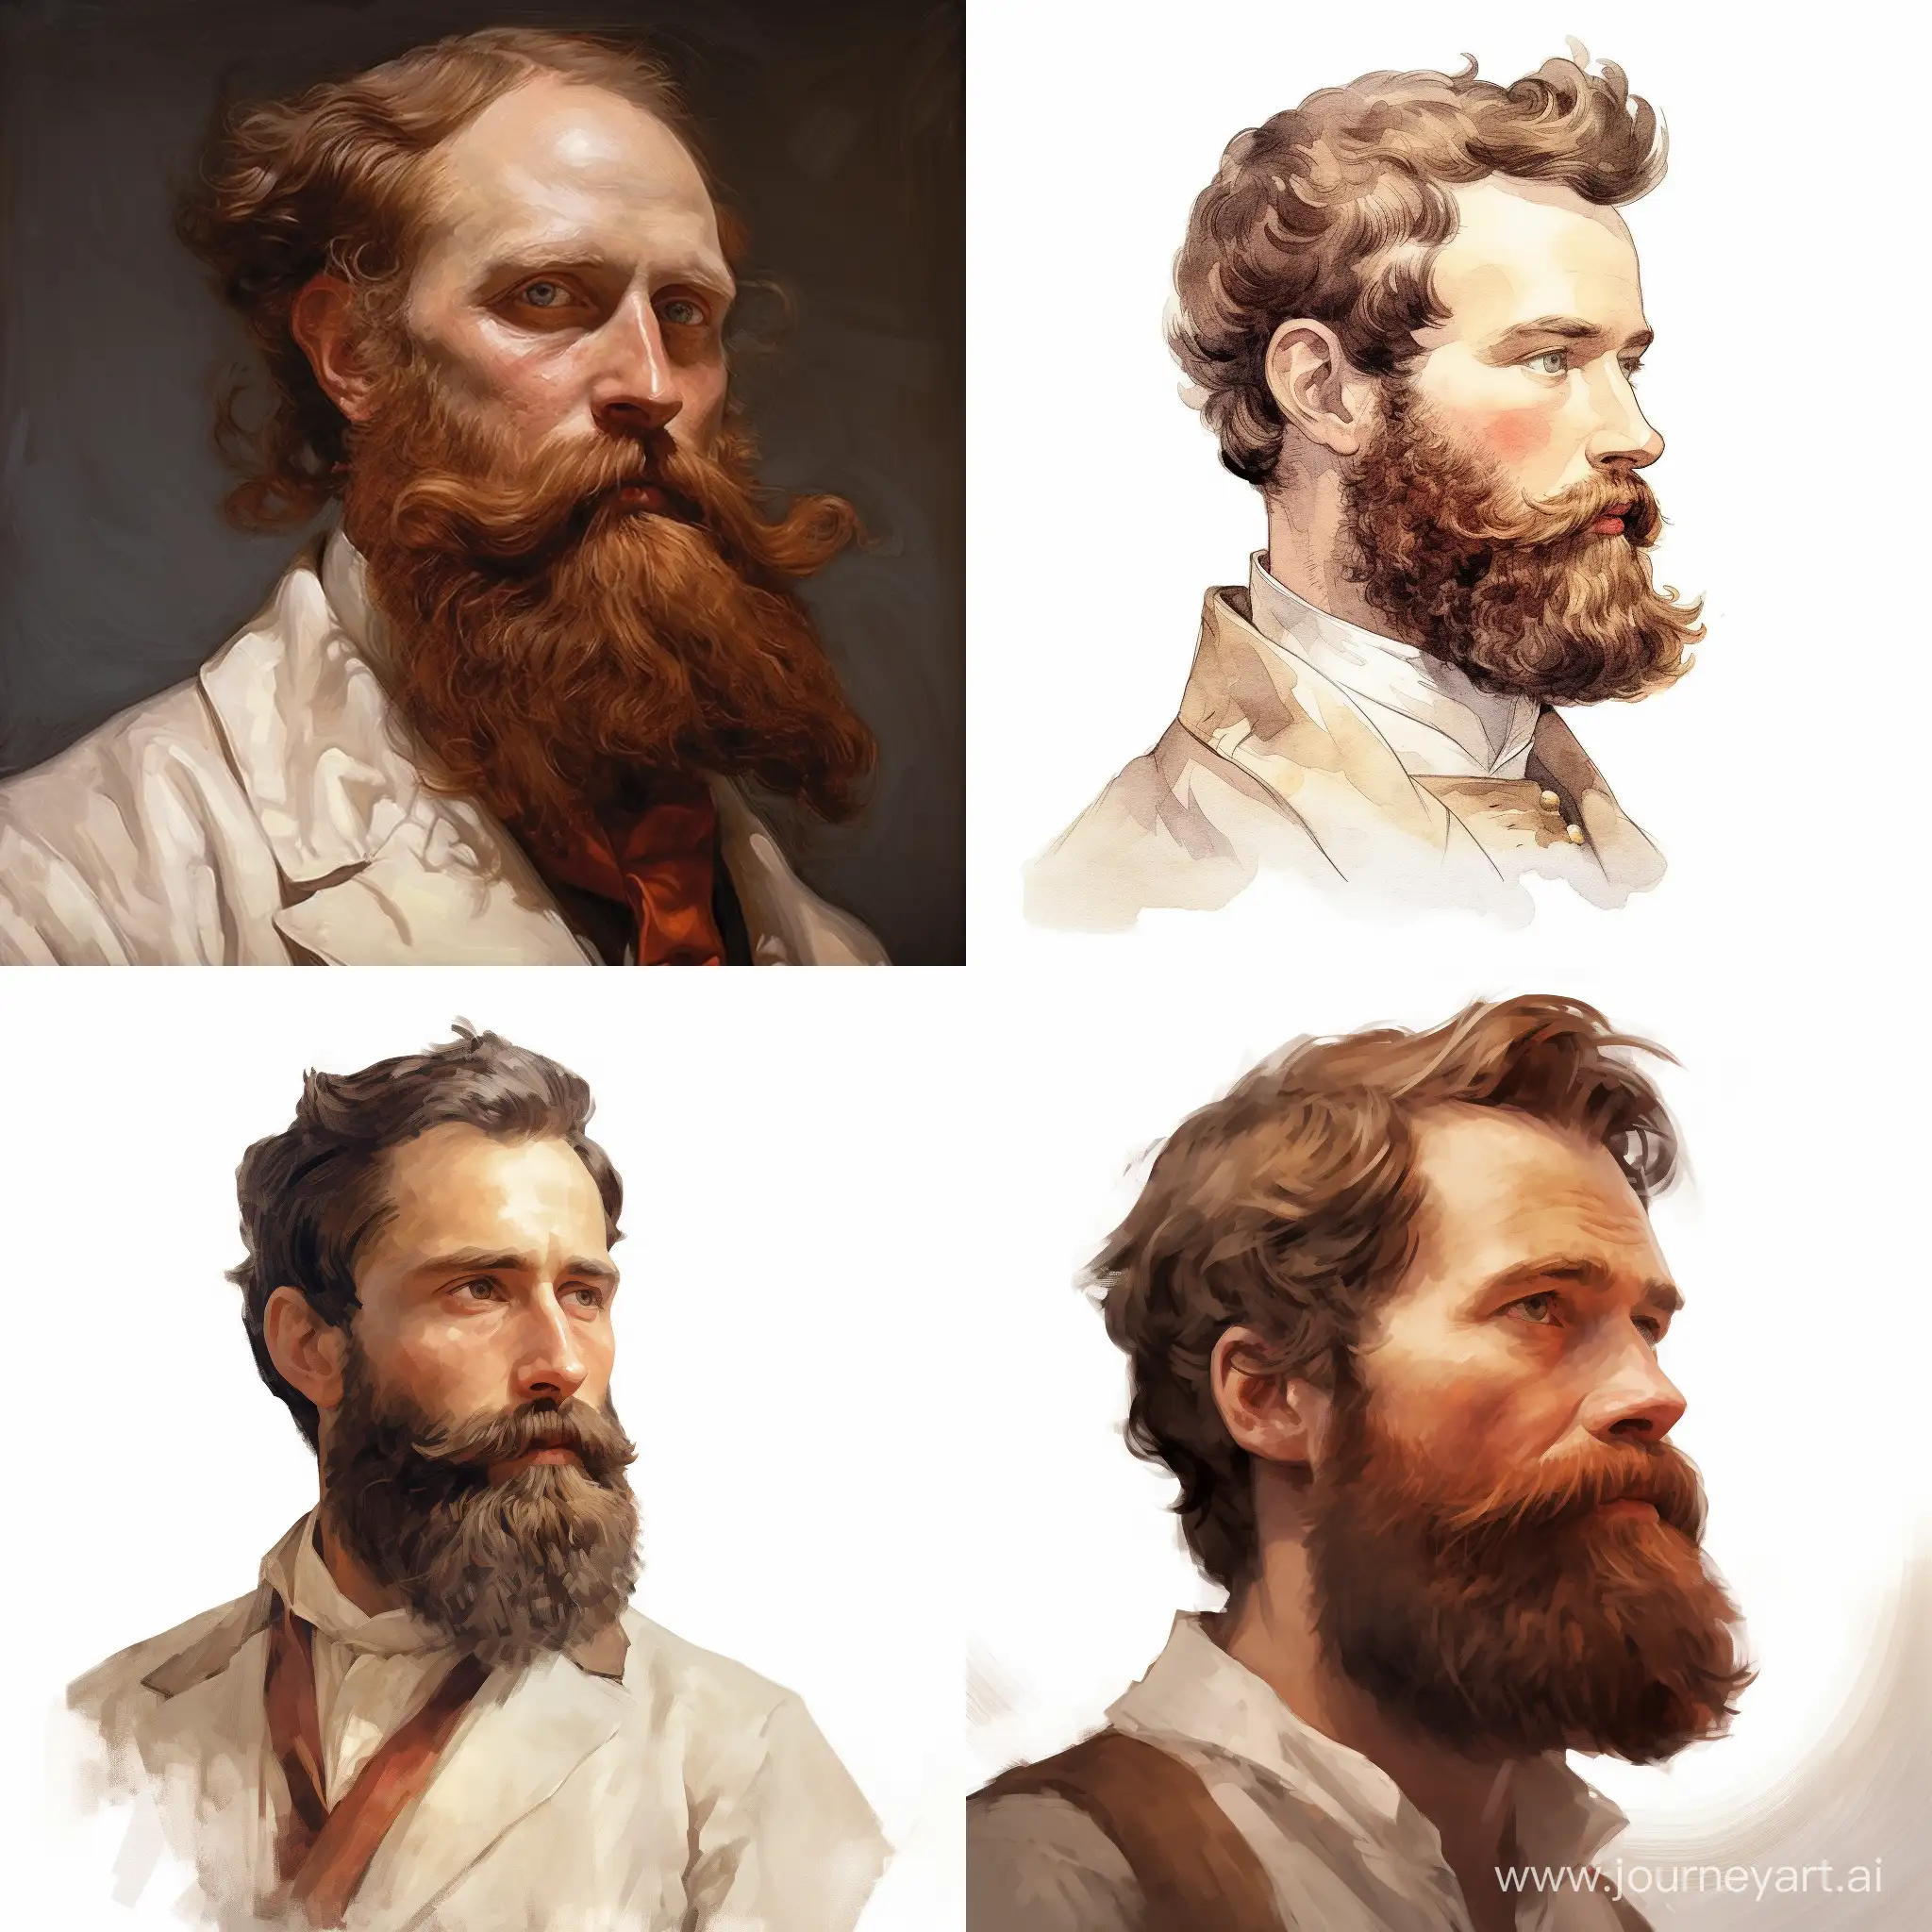 Bearded-Man-with-Broad-Shoulders-in-Striking-Reddish-Lighting